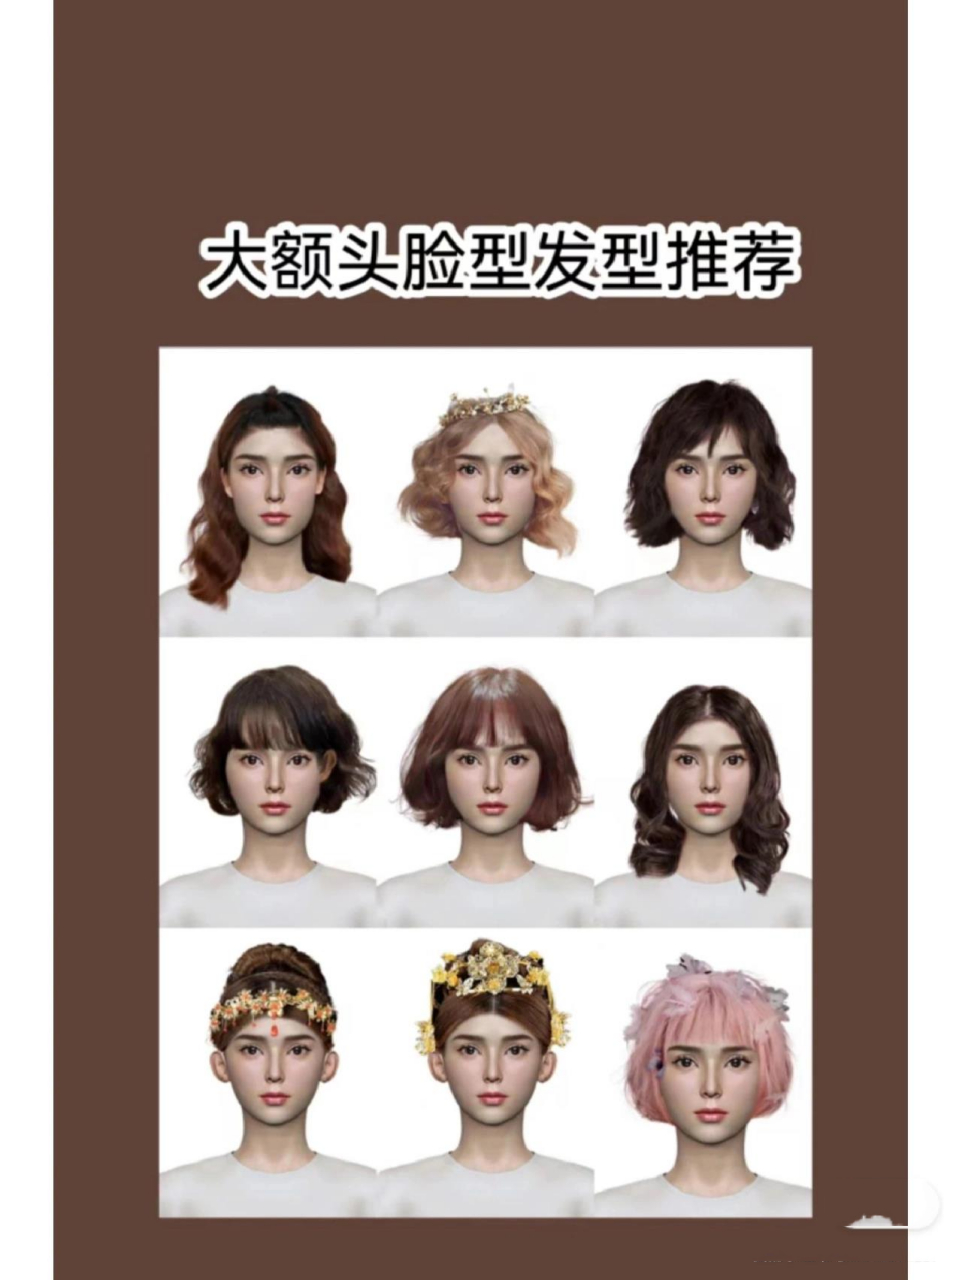 测发型设计软件测试脸型软件推荐          女生短发图片学生头直发